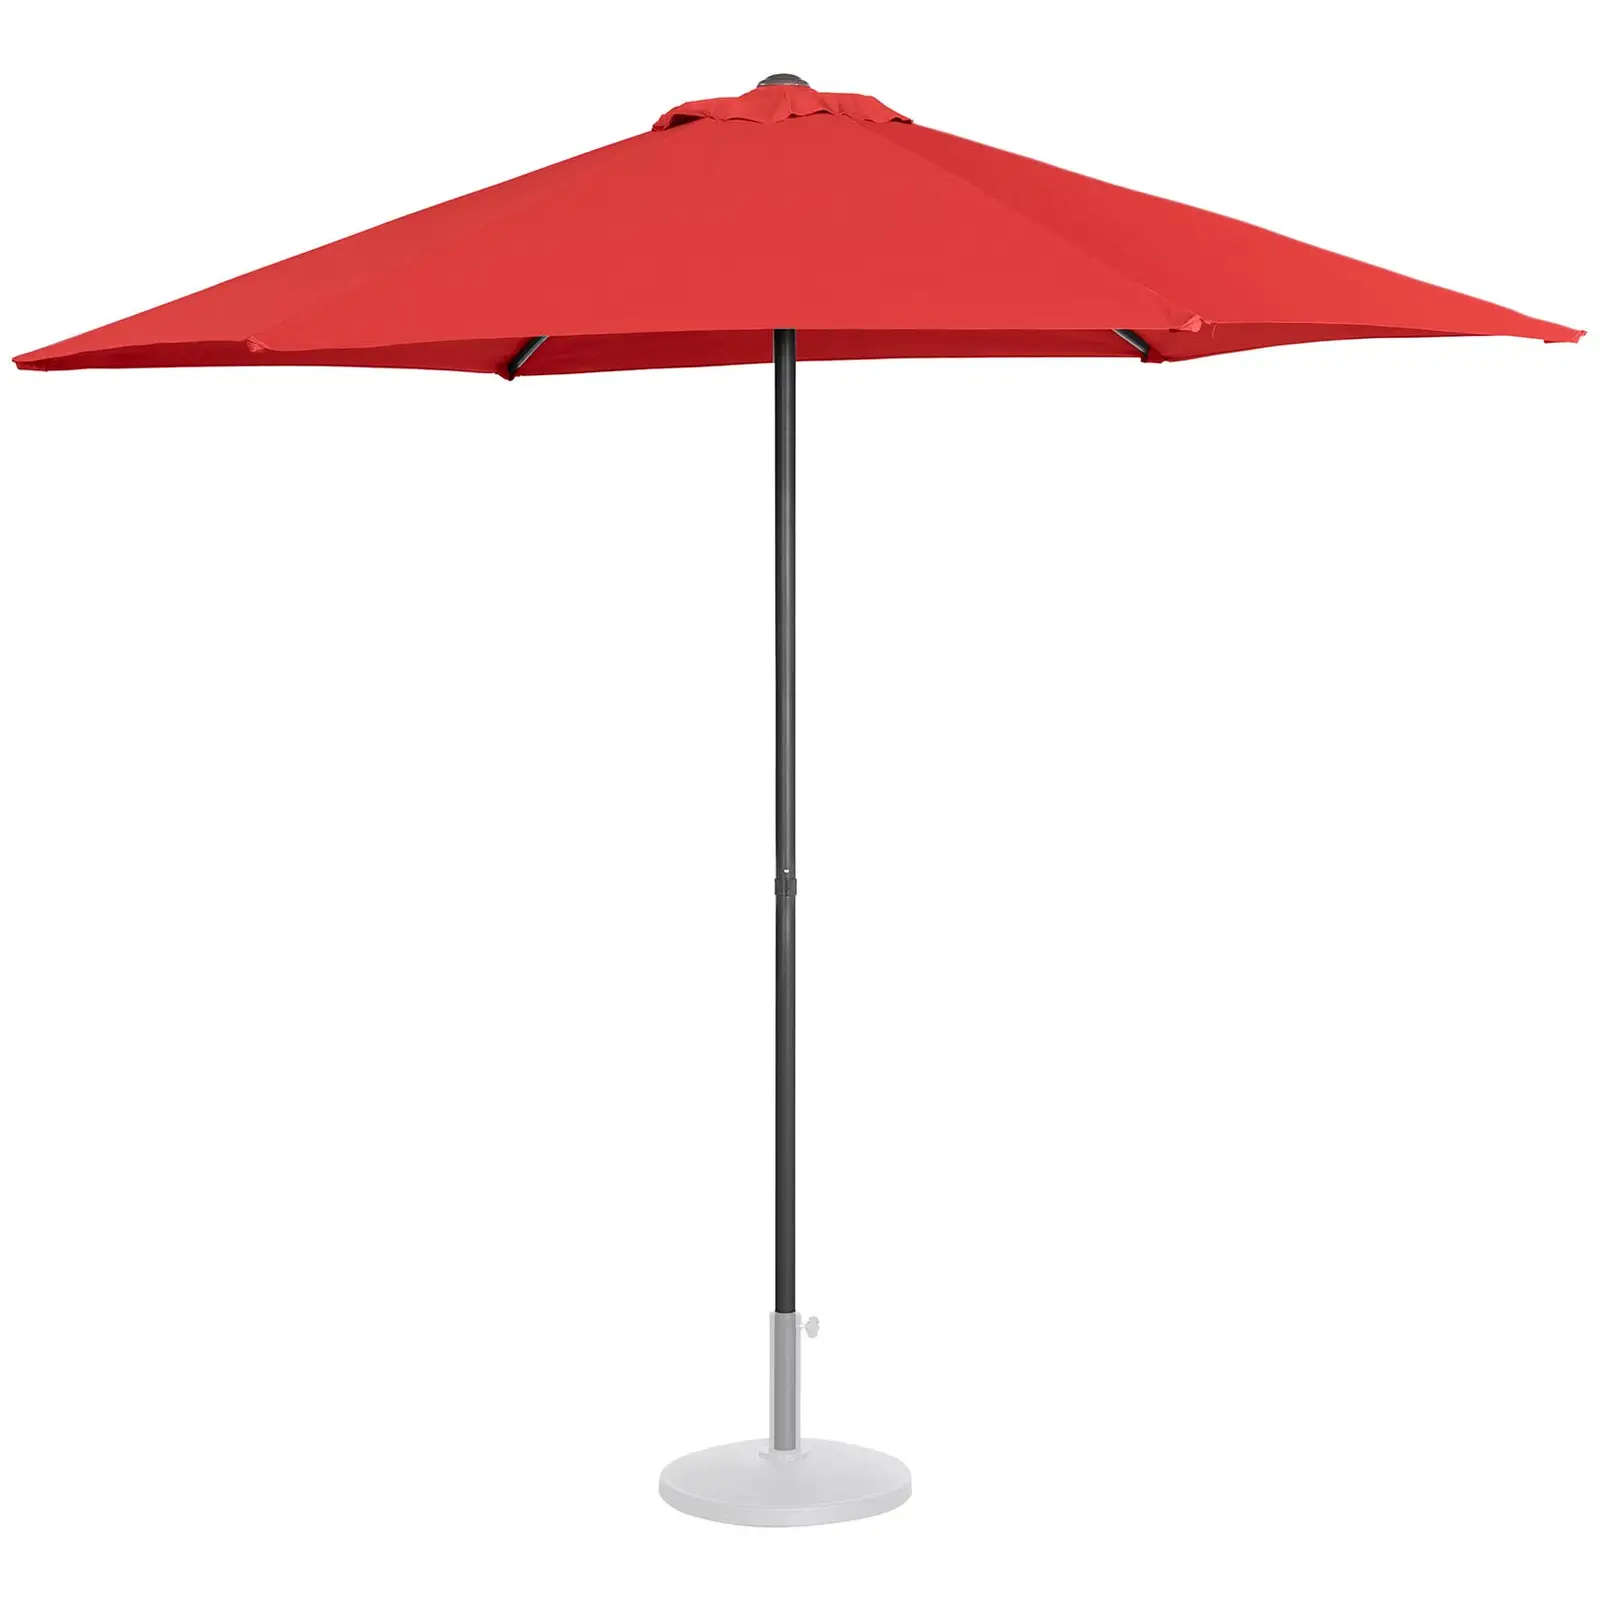 Sonnenschirm groß - rot - sechseckig - Ø 270 cm